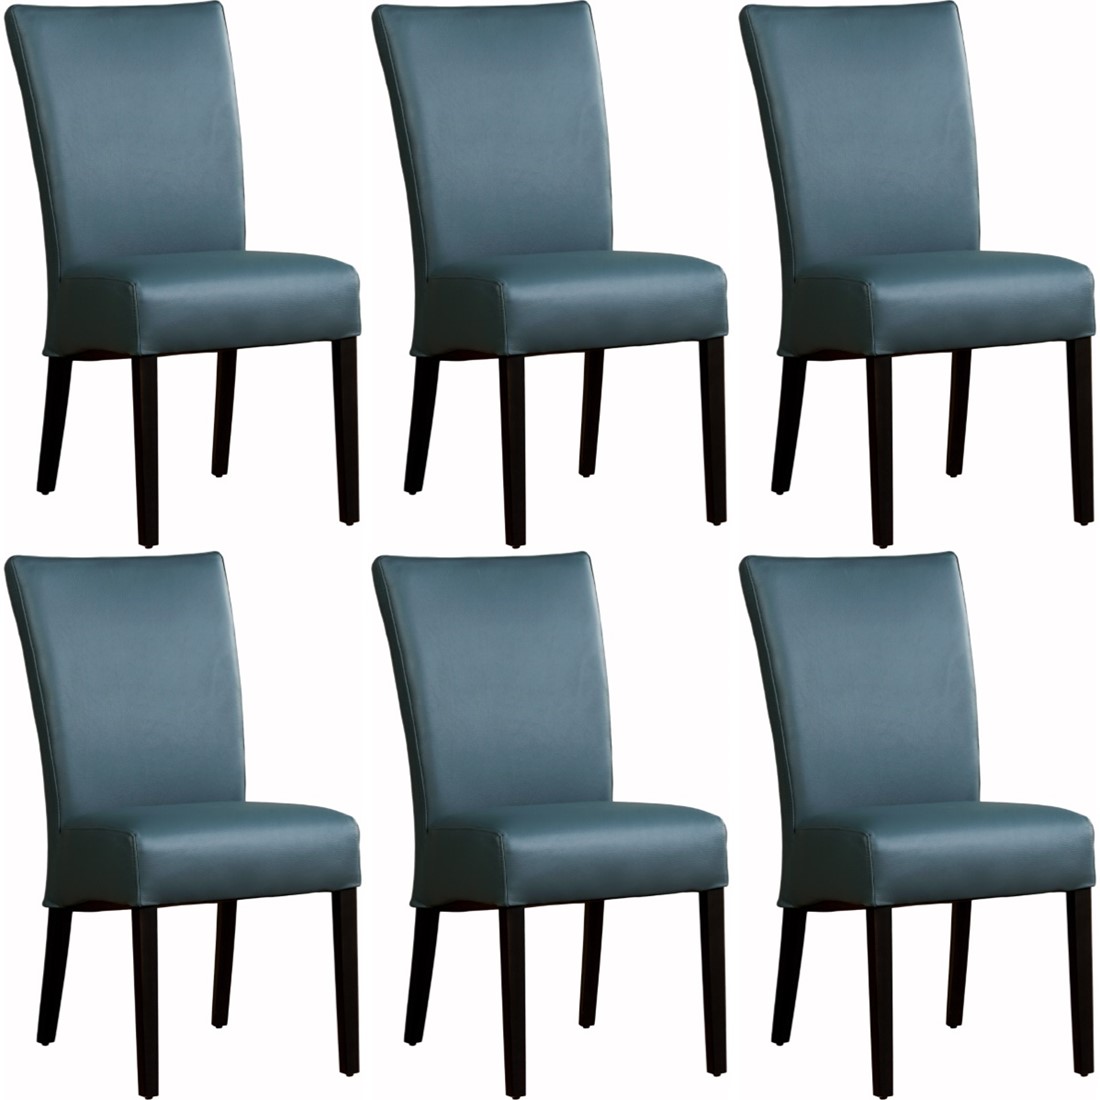 Leren eetkamerstoel Just - set van stoelen